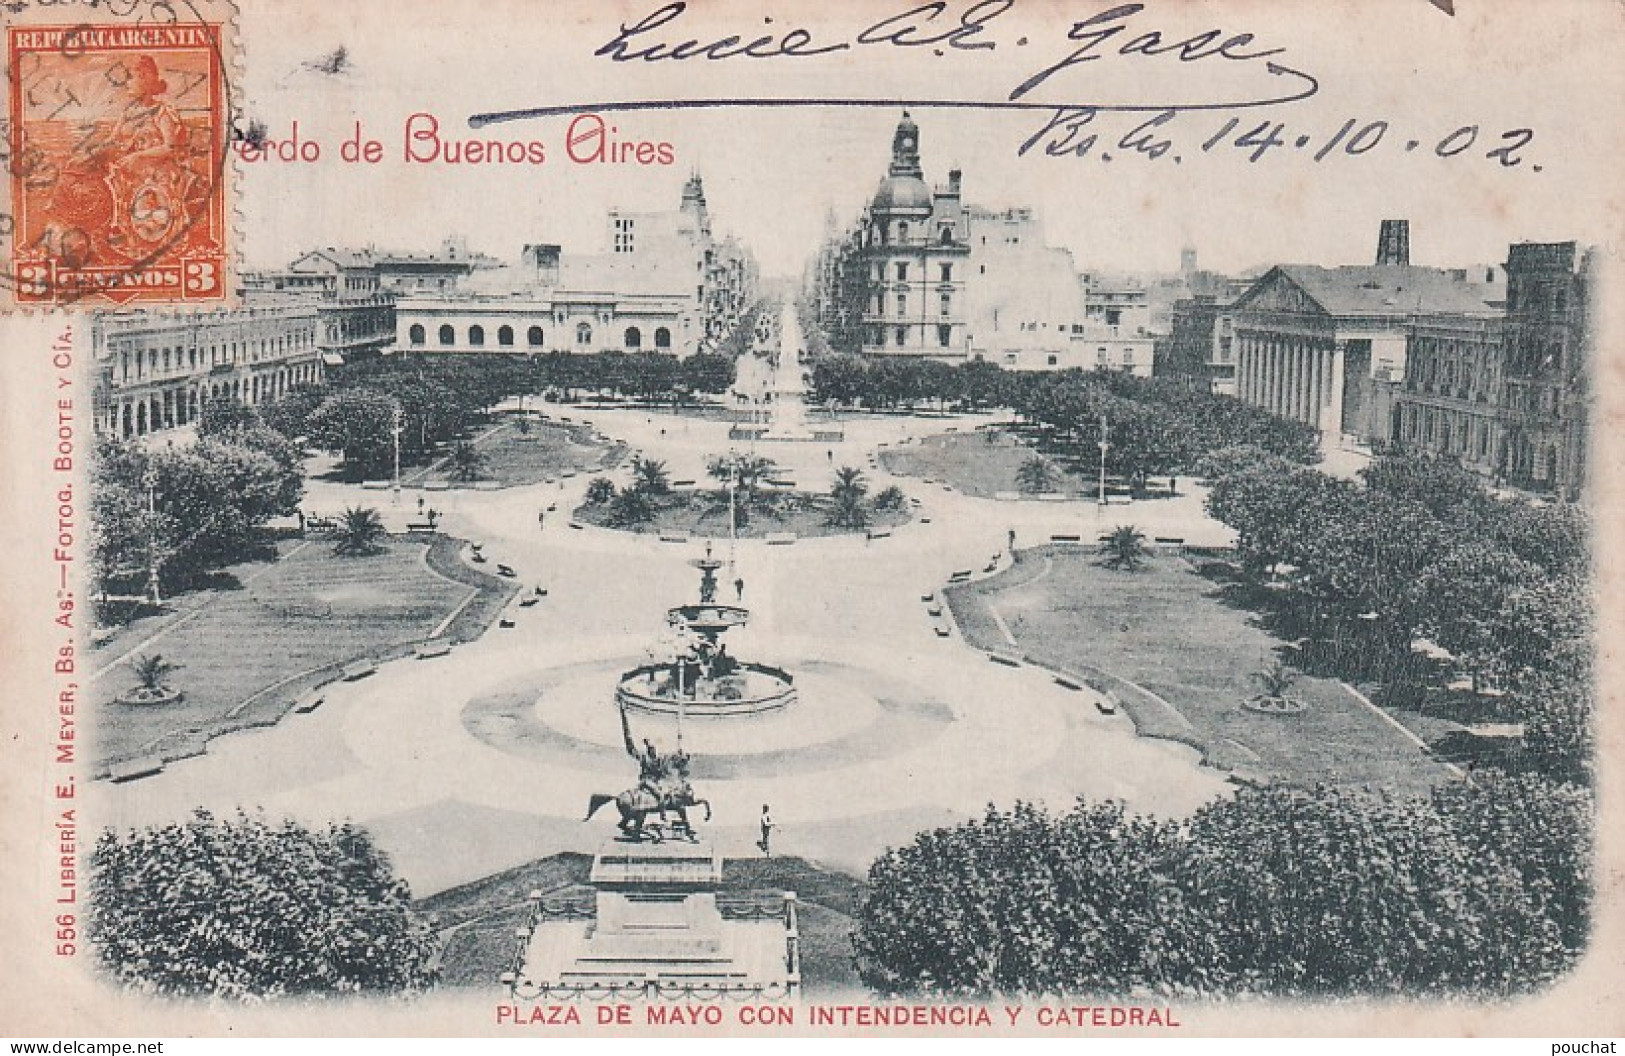 DE Nw28- PLAZA DE MAYO CON INTENDENCIA Y CATEDRAL - RECUERDO DE BUENOS AIRES - ARGENTINA - OBLITERATION 1902 - Argentinien